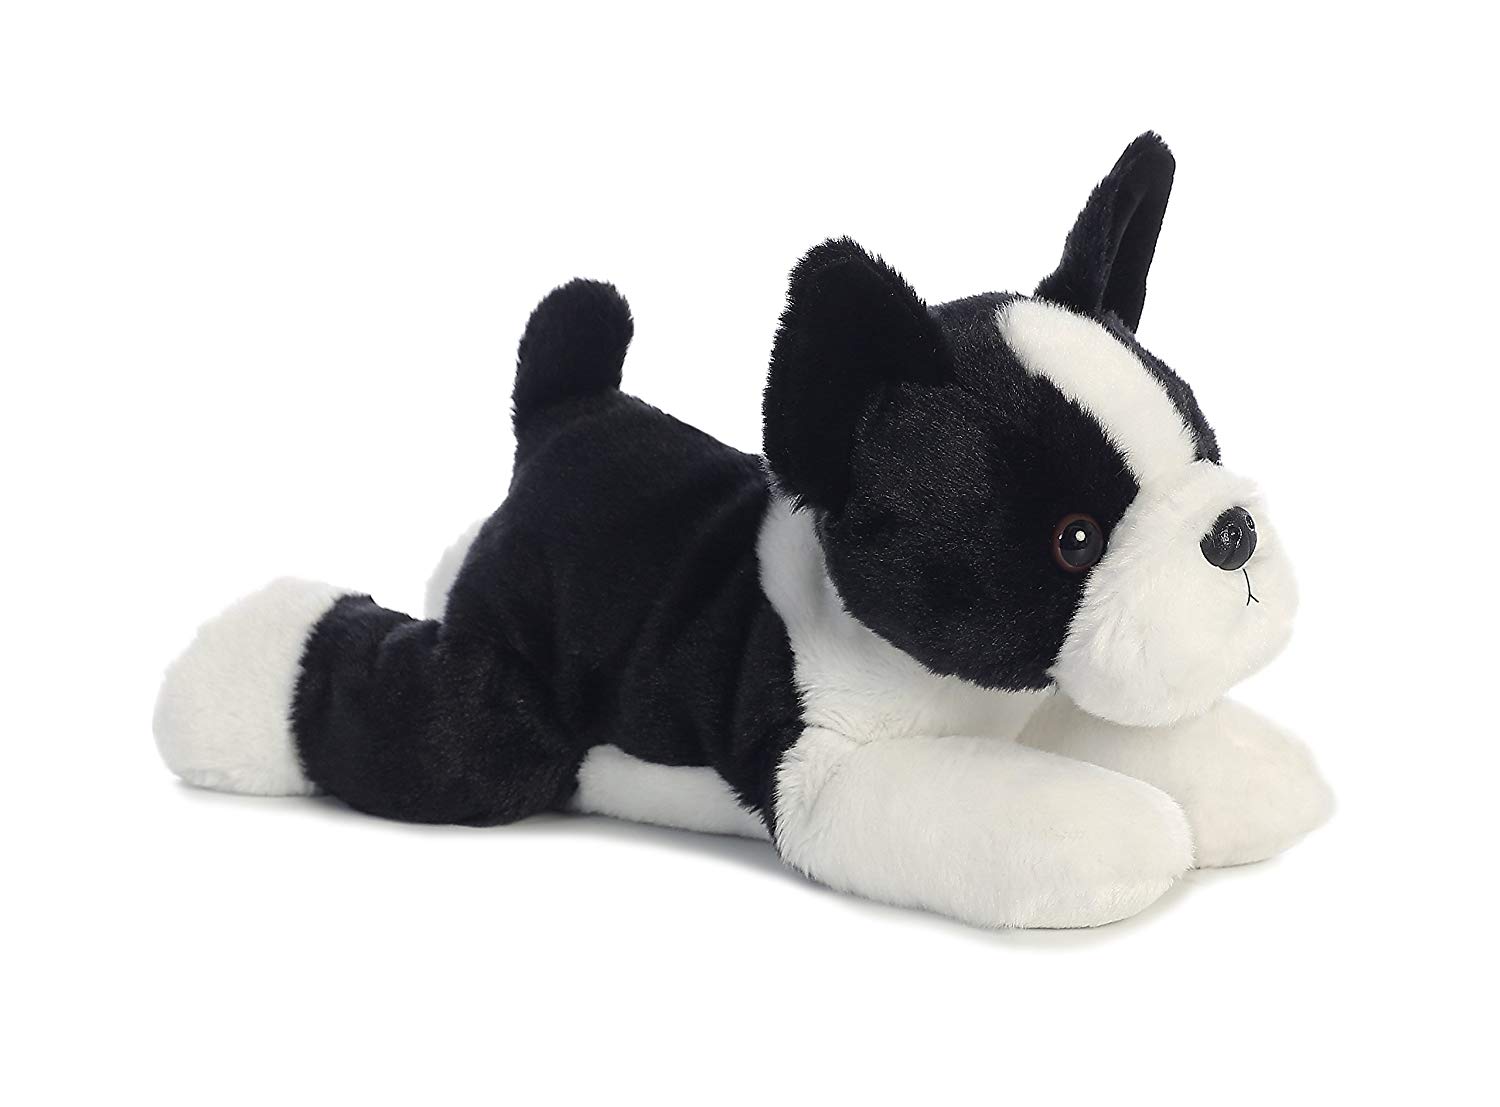 Boston Terrier stuffed toy